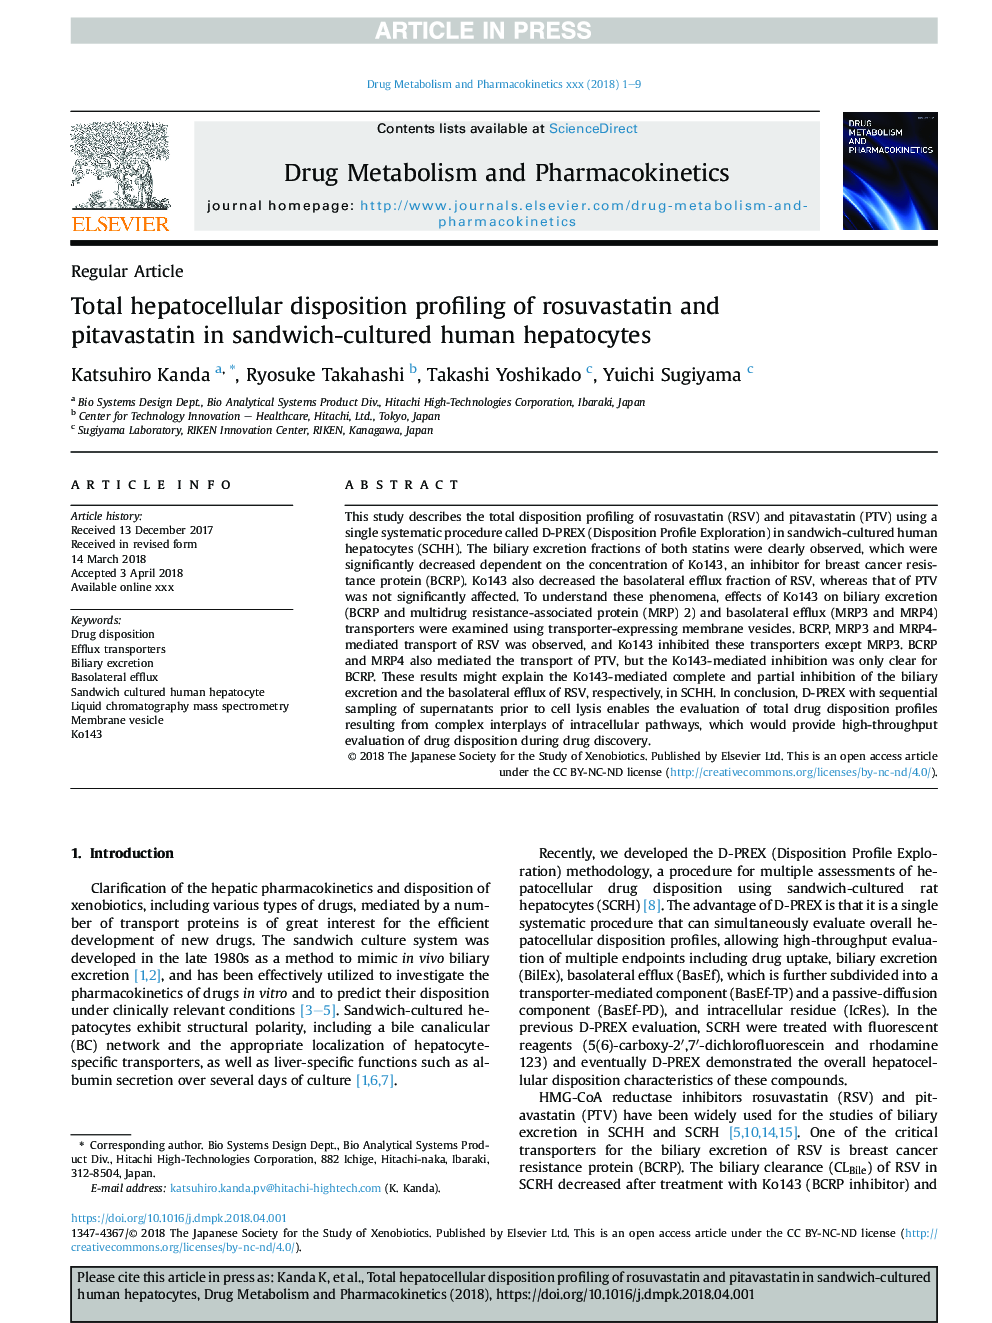 نمایه سازی وضعیت سلول های خونی در روتوسواستاتین و پیتواستاستین در هپاتوسیت های انسانی مصنوعی ساندویچ 